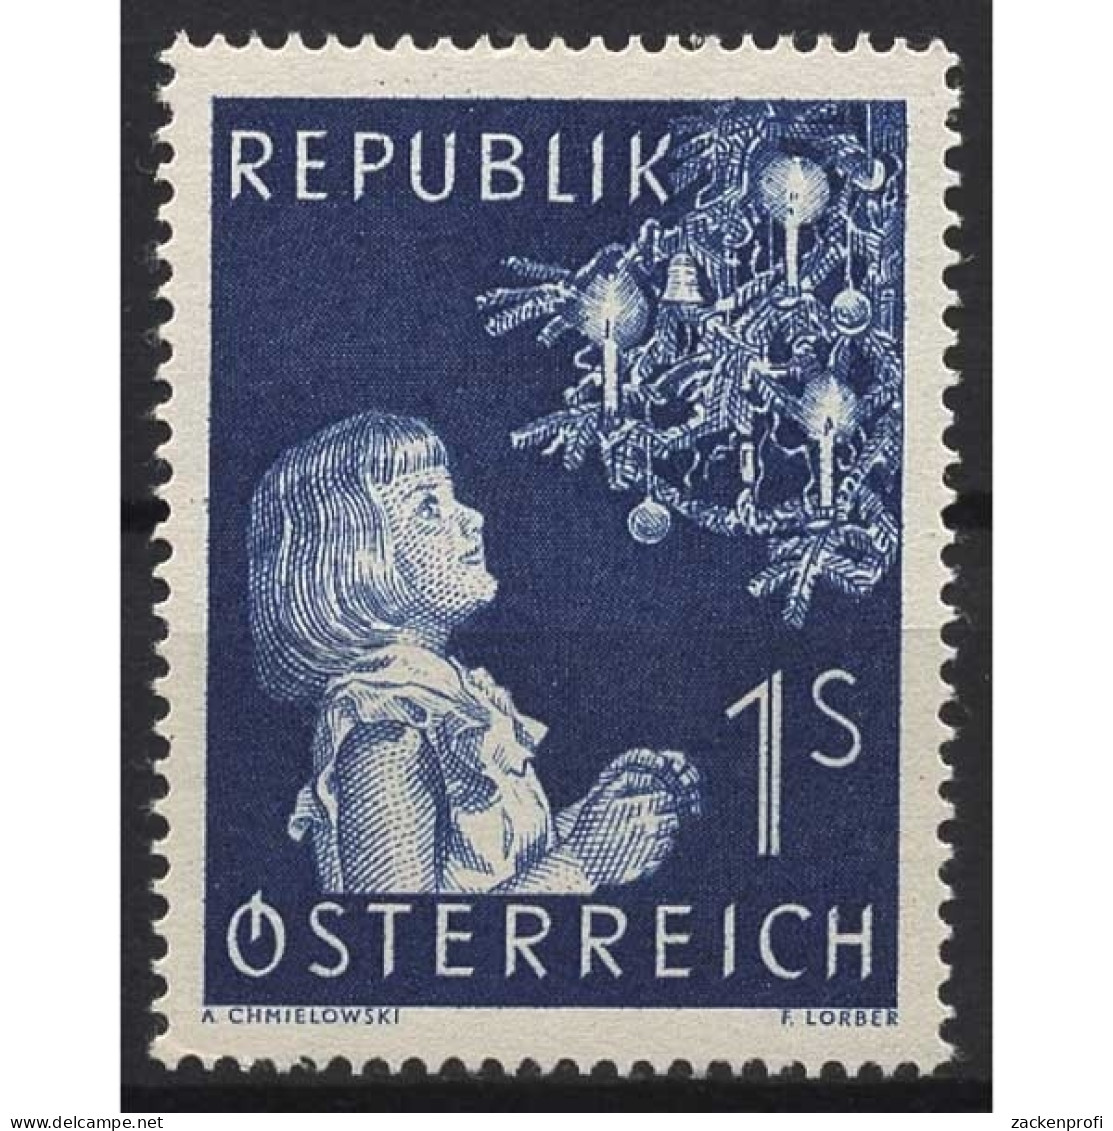 Österreich 1954 Weihnachten: Mädchen Vor Christbaum 1009 Postfrisch - Neufs